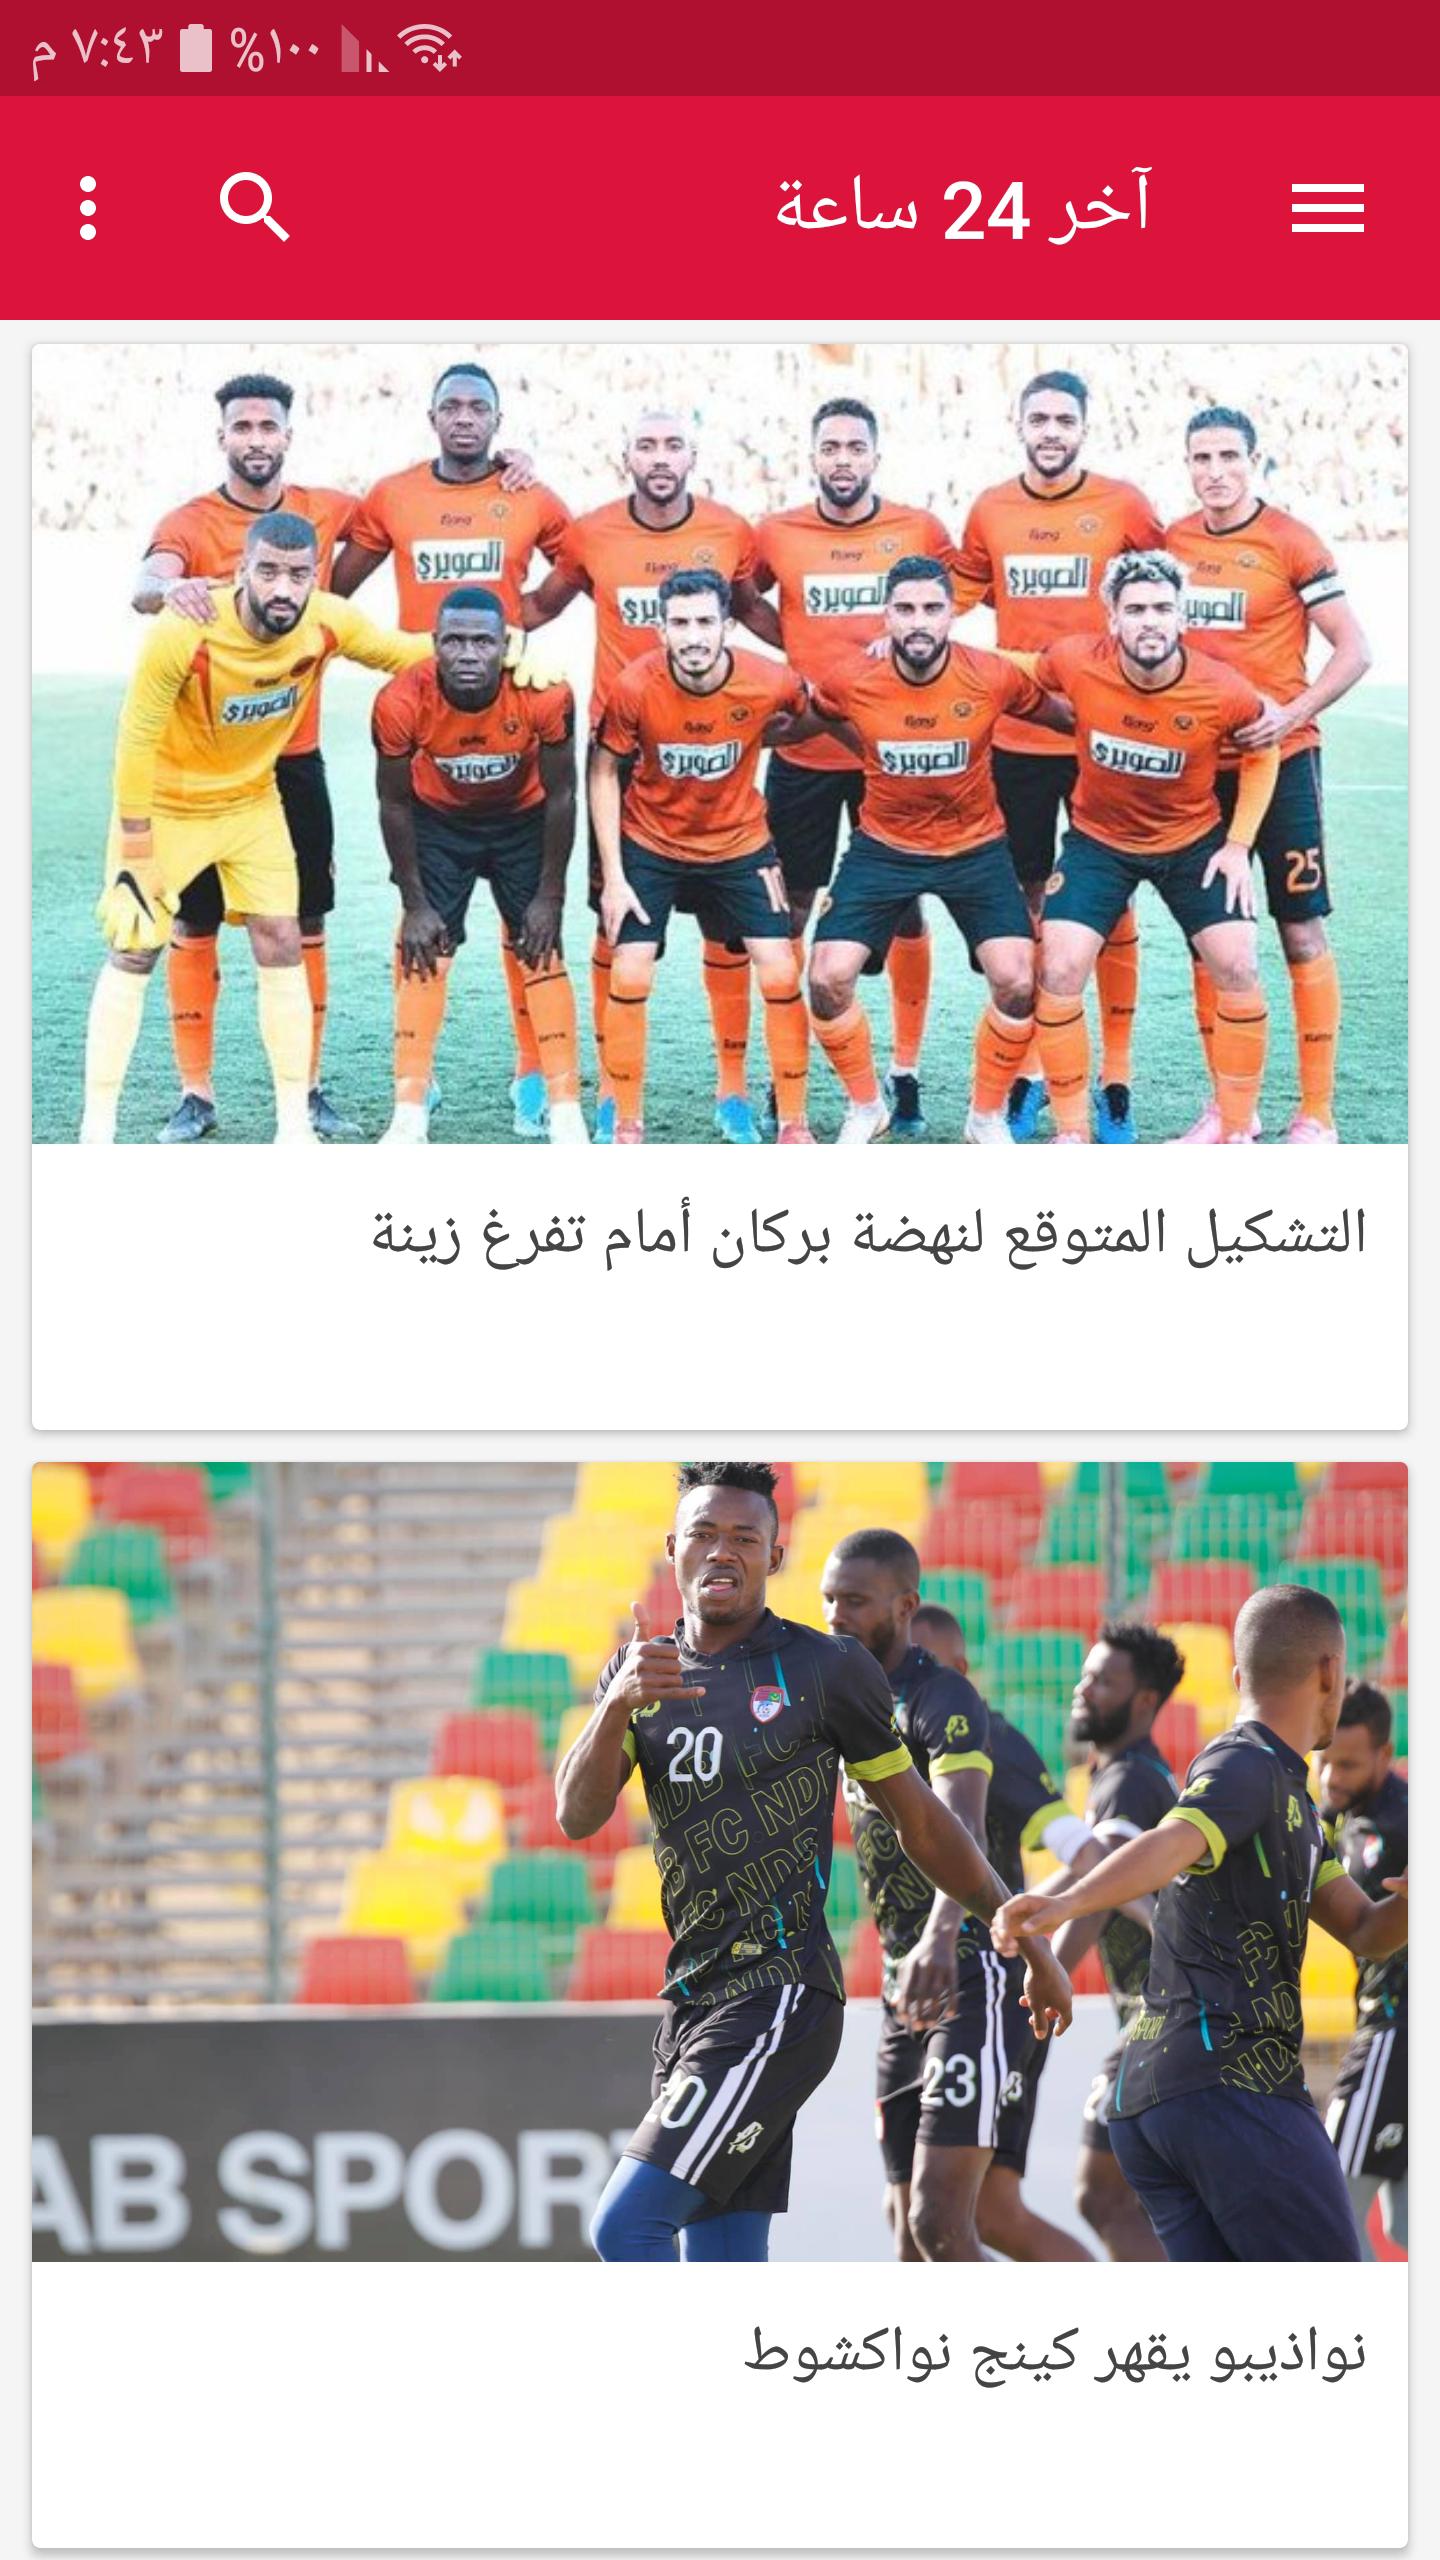 أخبار الرياضة الموريتانية APK for Android Download